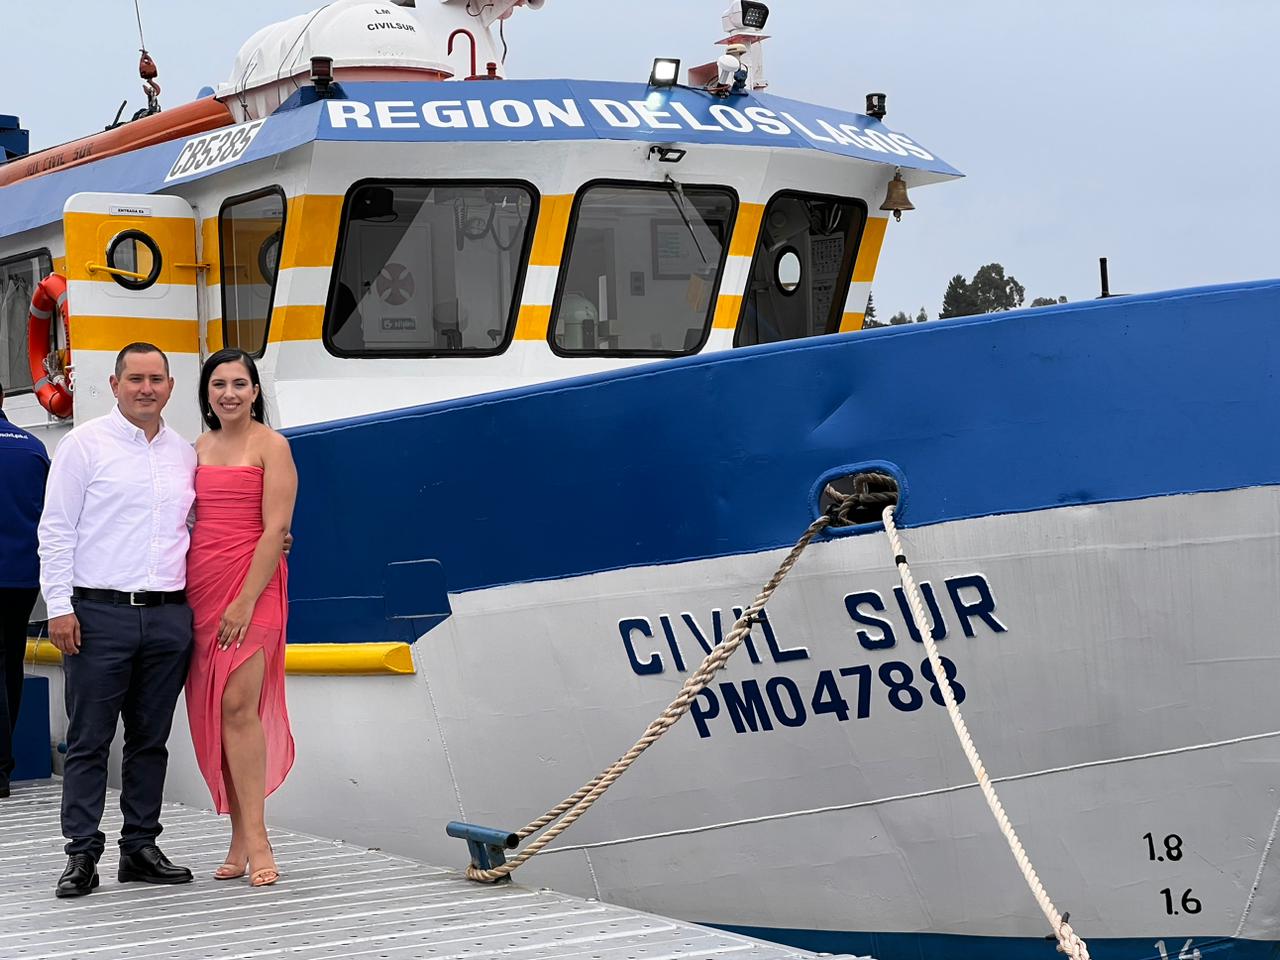 Registro Civil reinauguró oficina marítima, lancha “CivilSur” con matrimonios y AUC